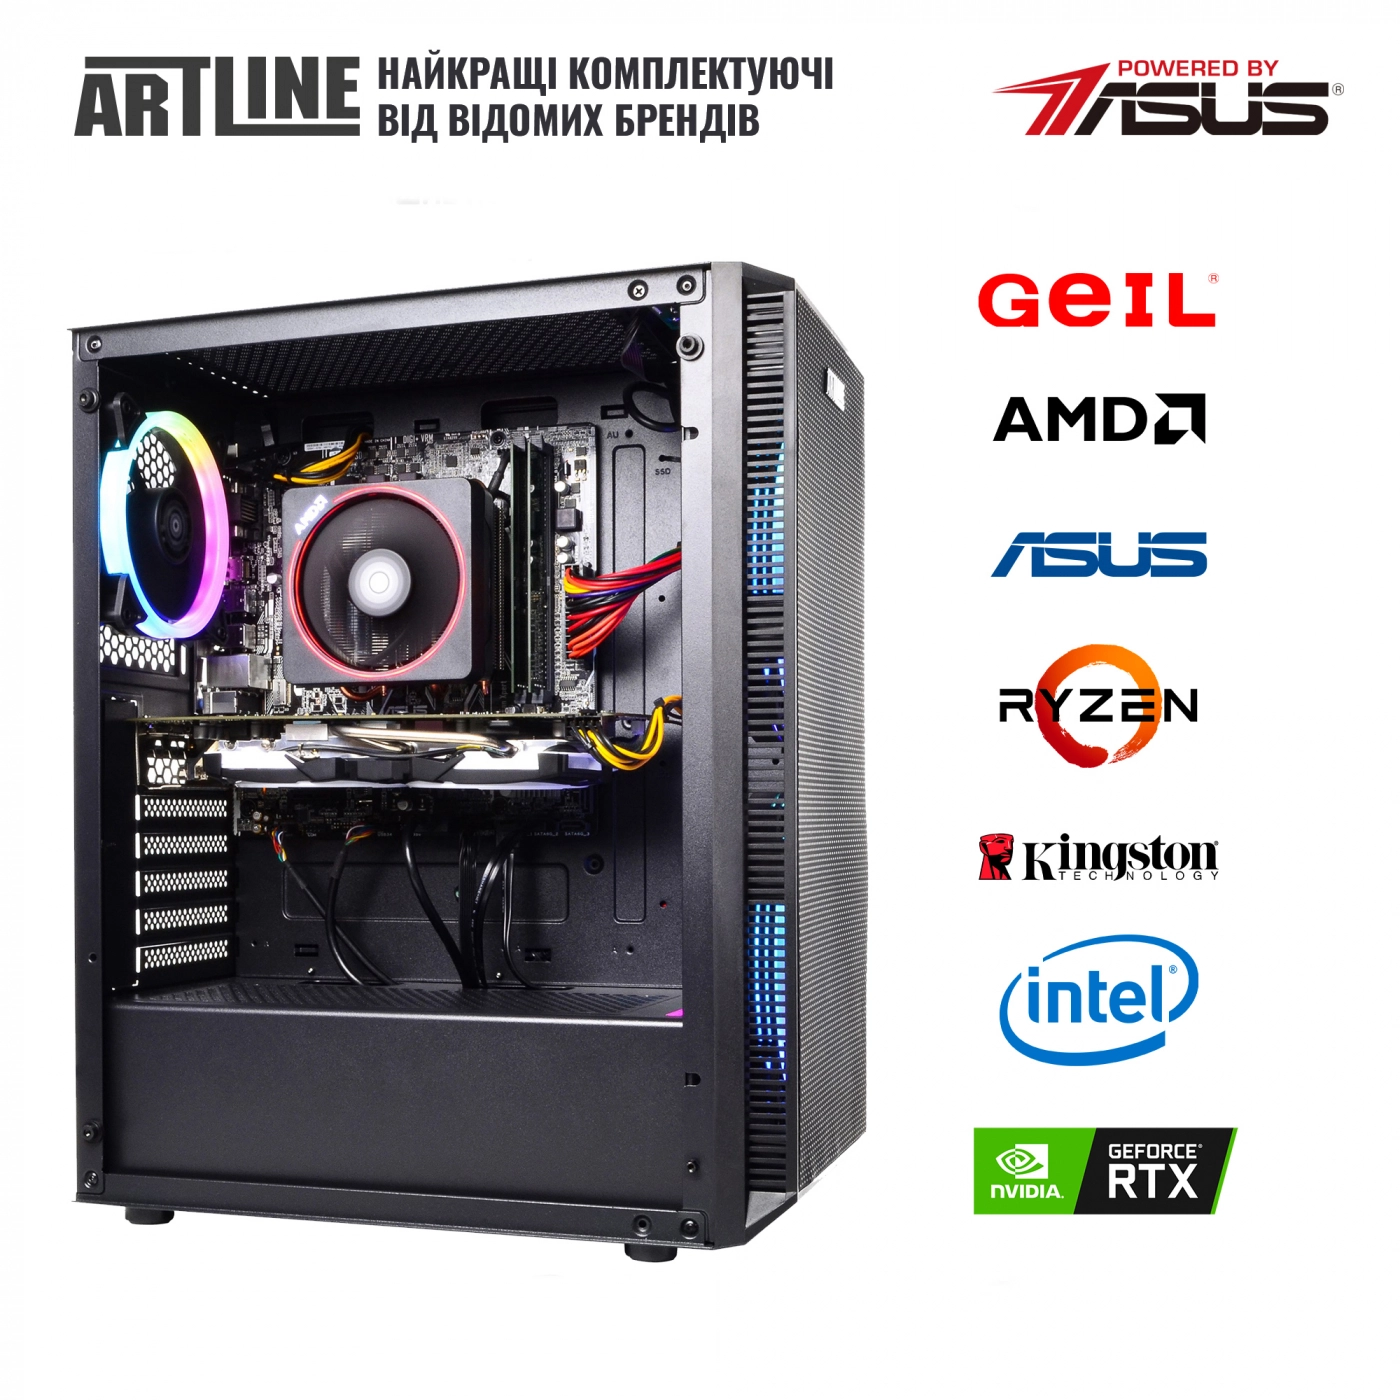 Купить Компьютер ARTLINE Gaming X65v31 - фото 6